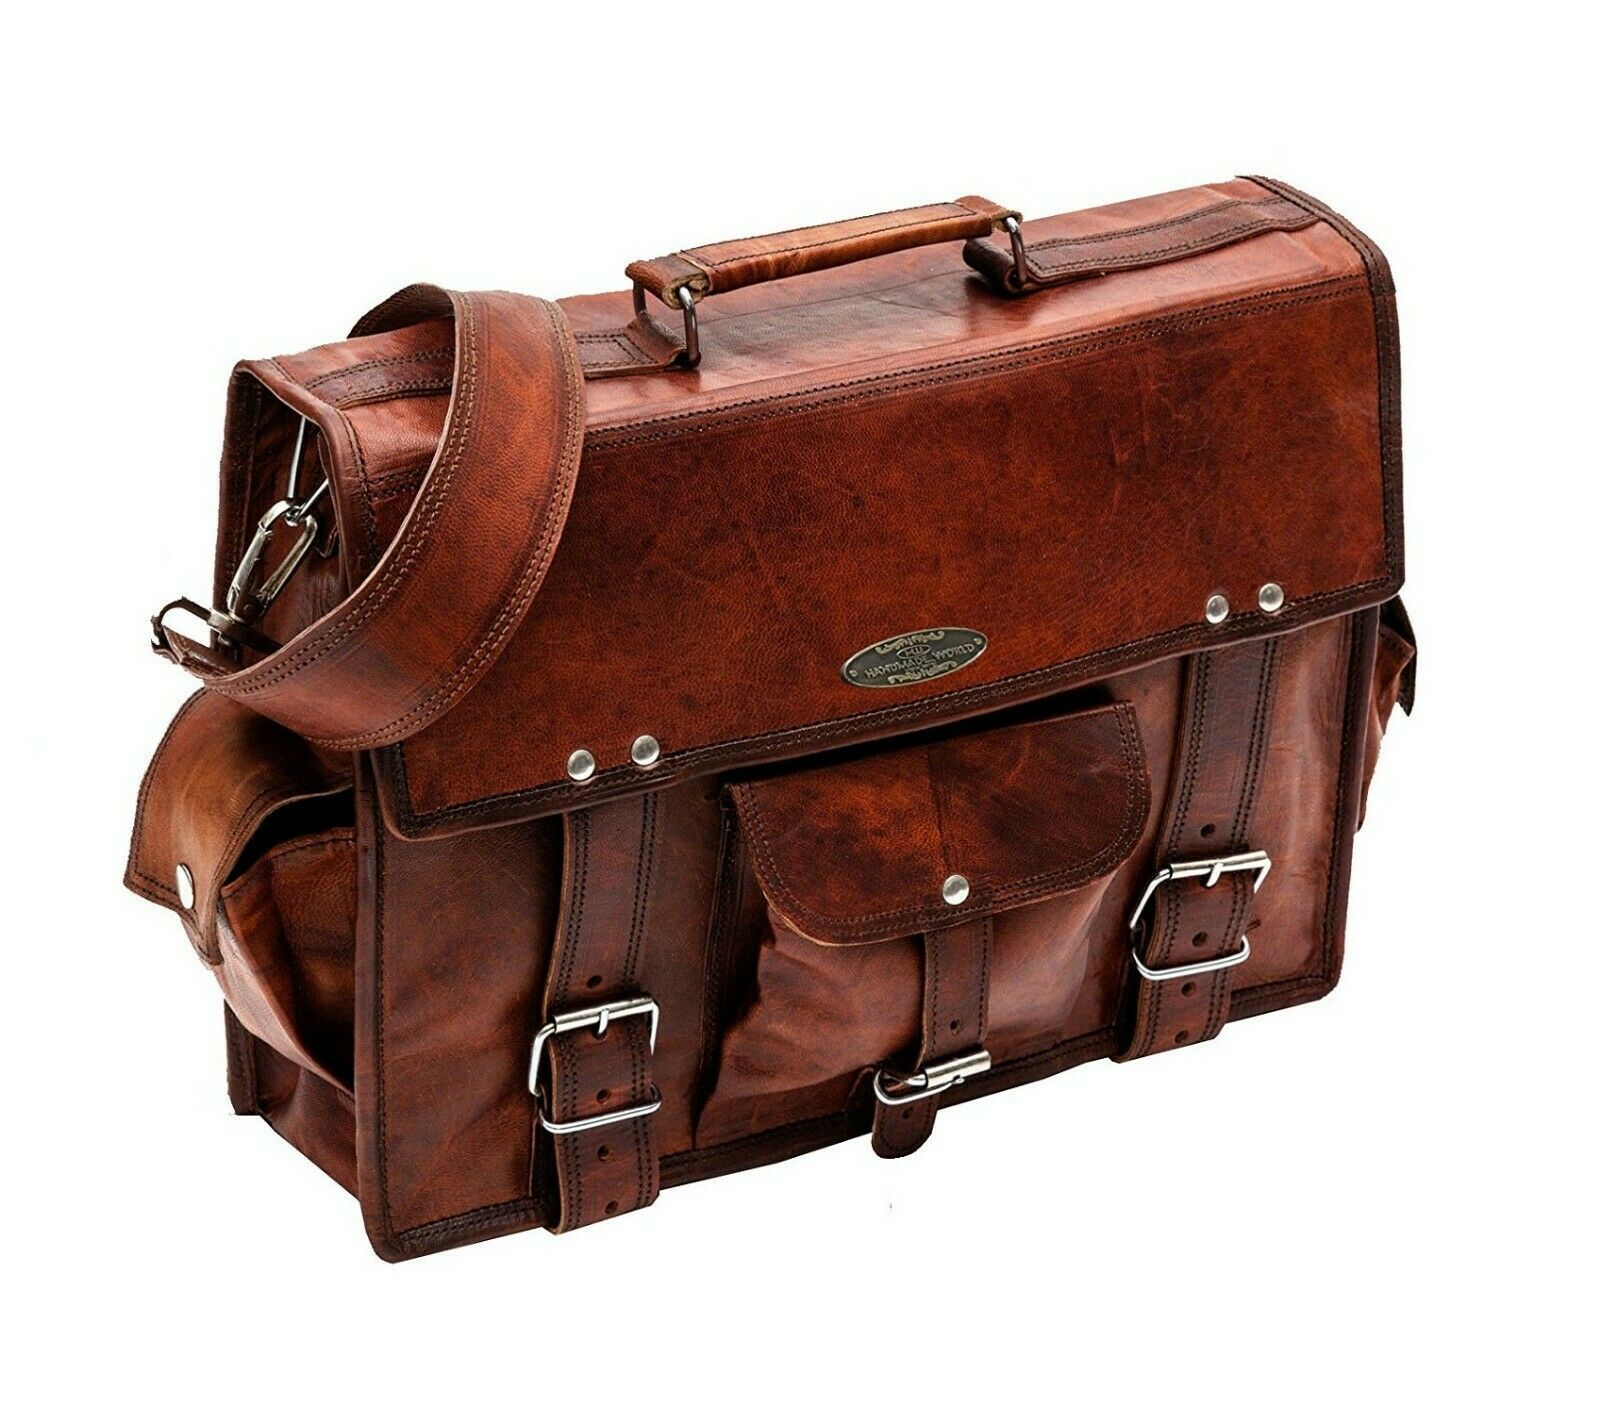 Vintage Leather Messenger Bag 15 inch - Crossbody Laptop Bag Professional Bag - Bags